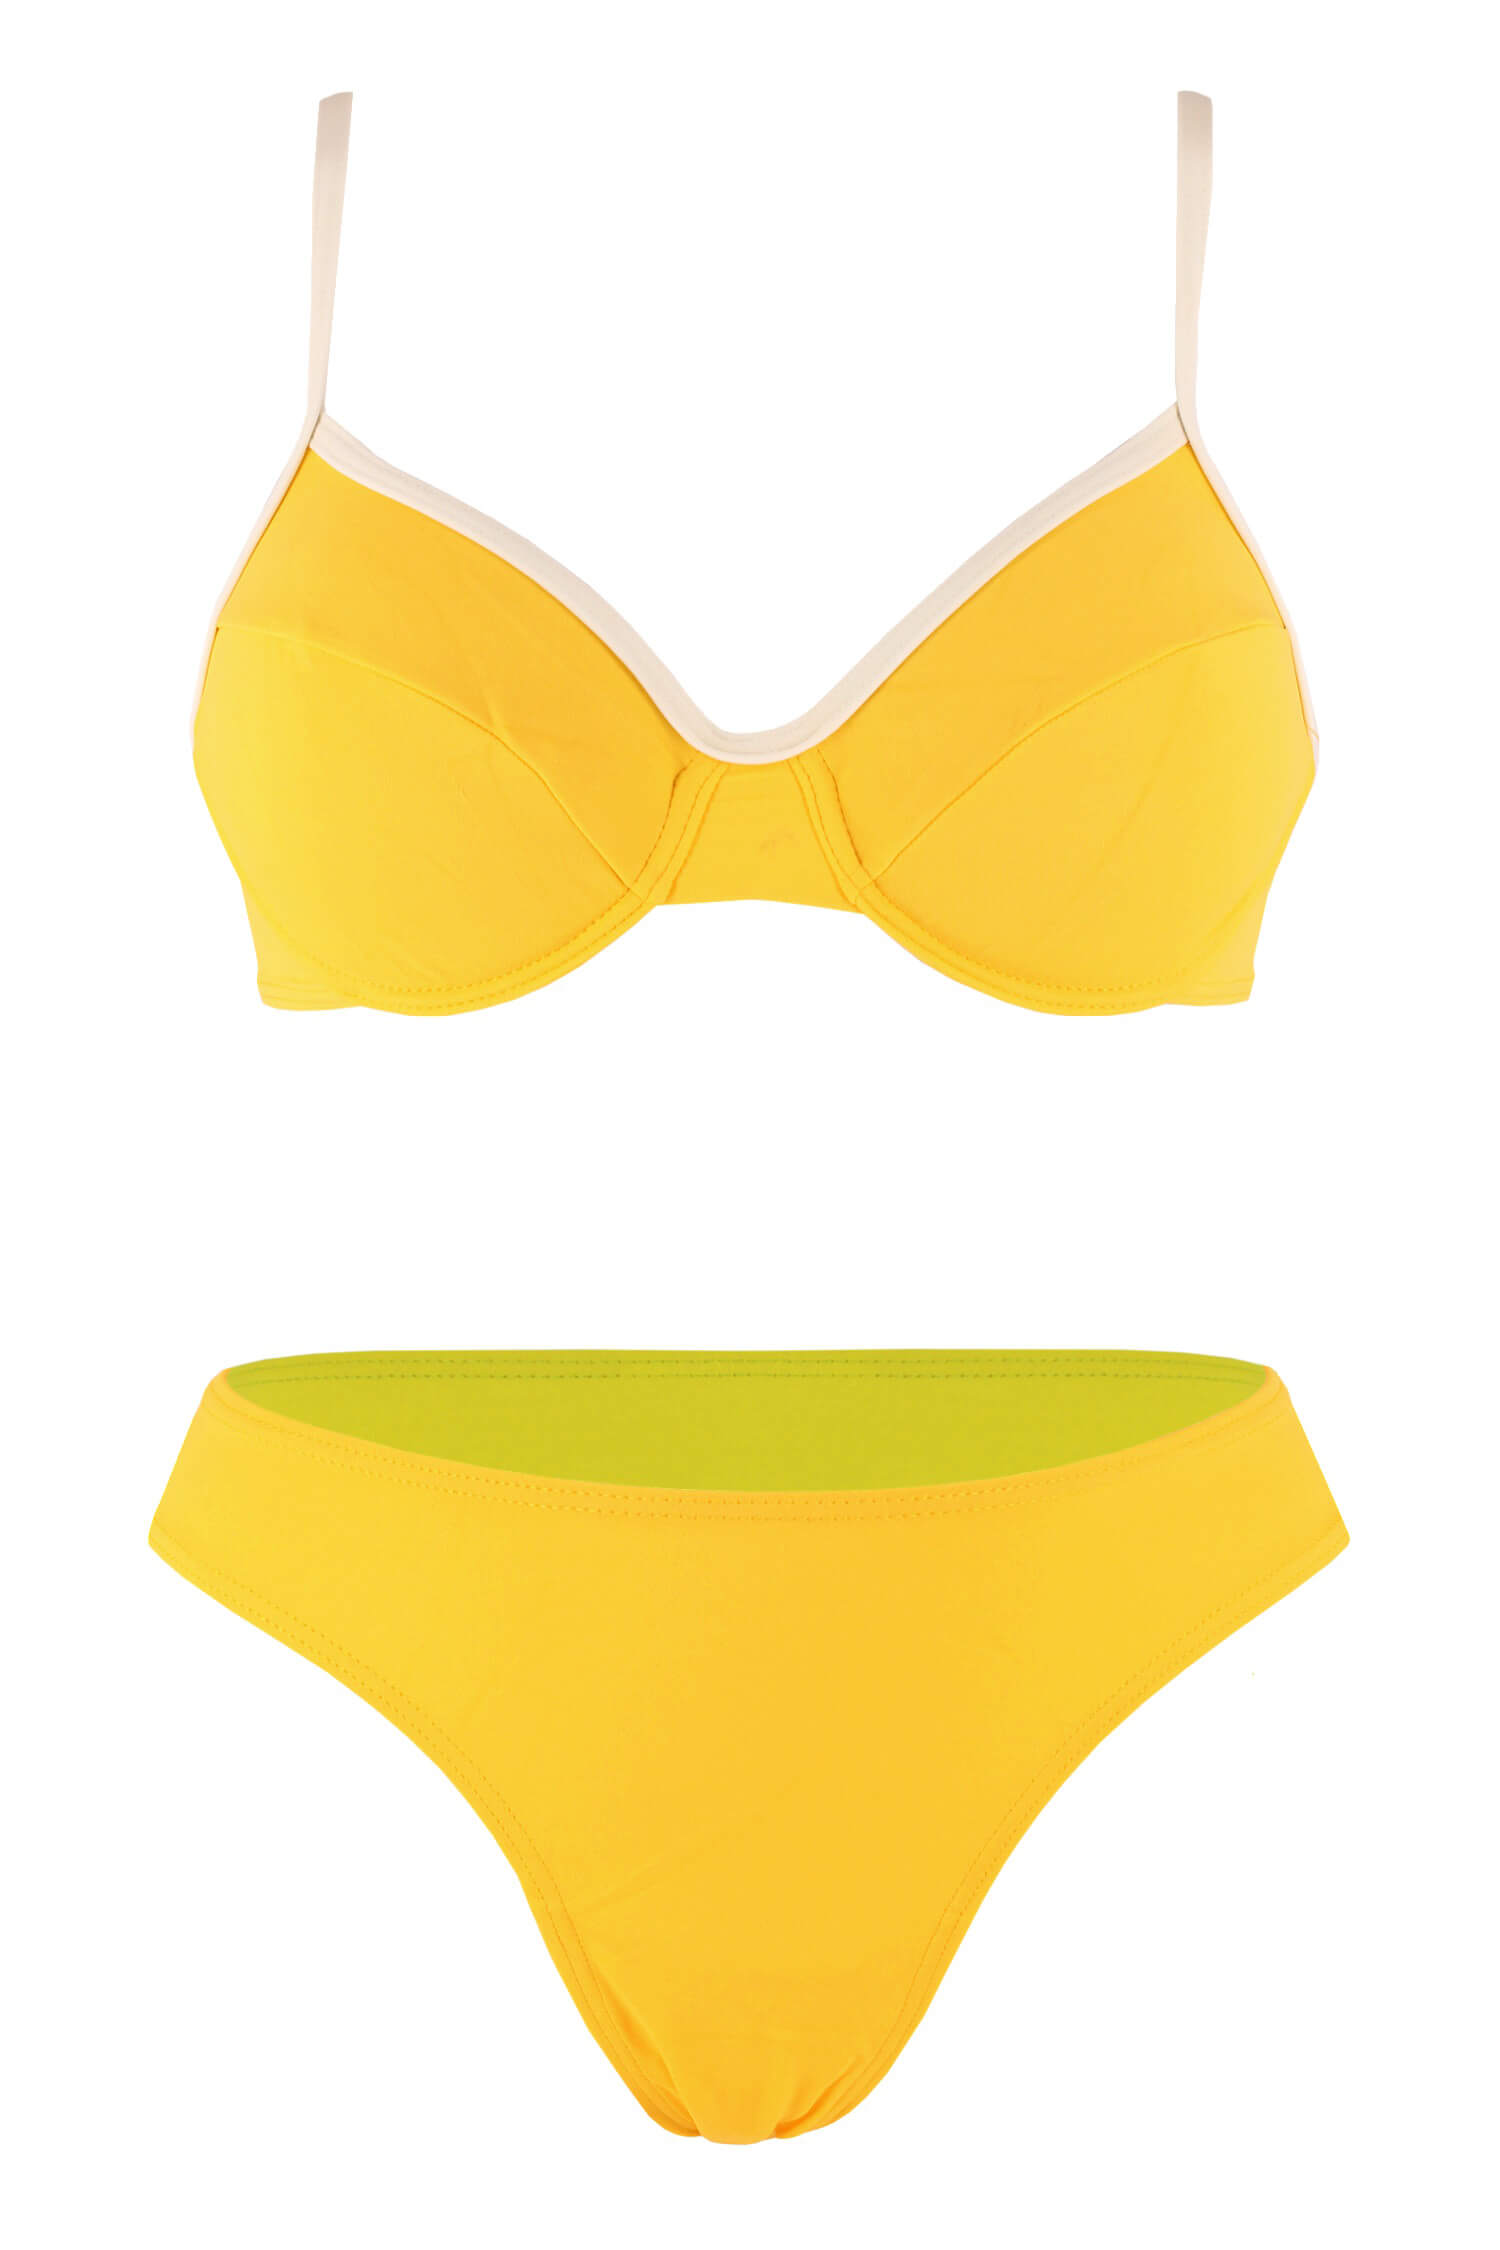 Liduš dámské dvoudílné plavky bez výztuže L žlutá